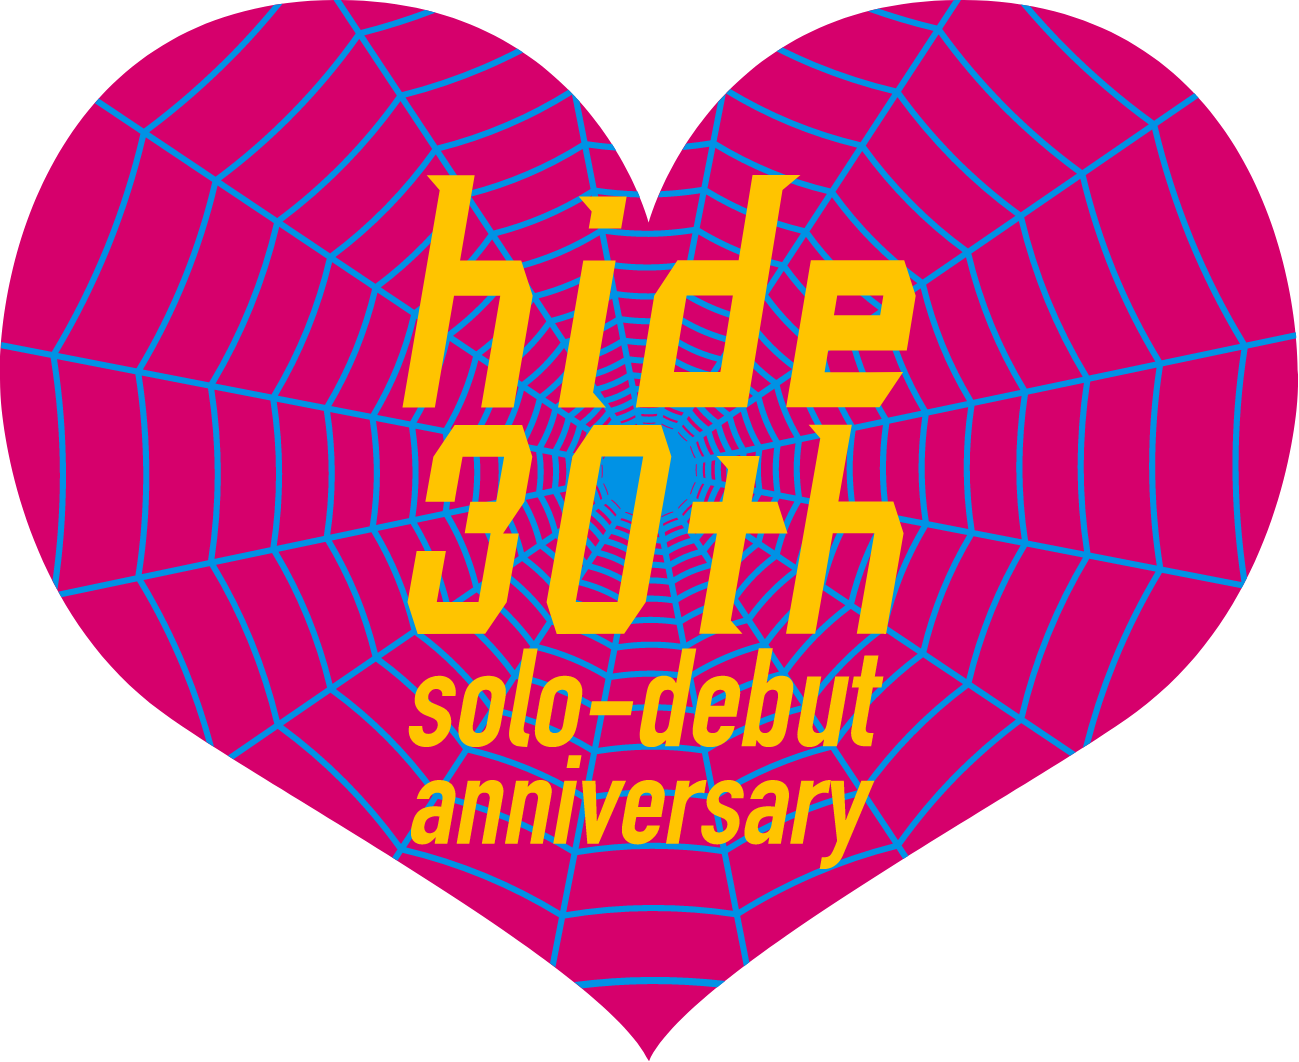 hide 30th solo-debut anniversary